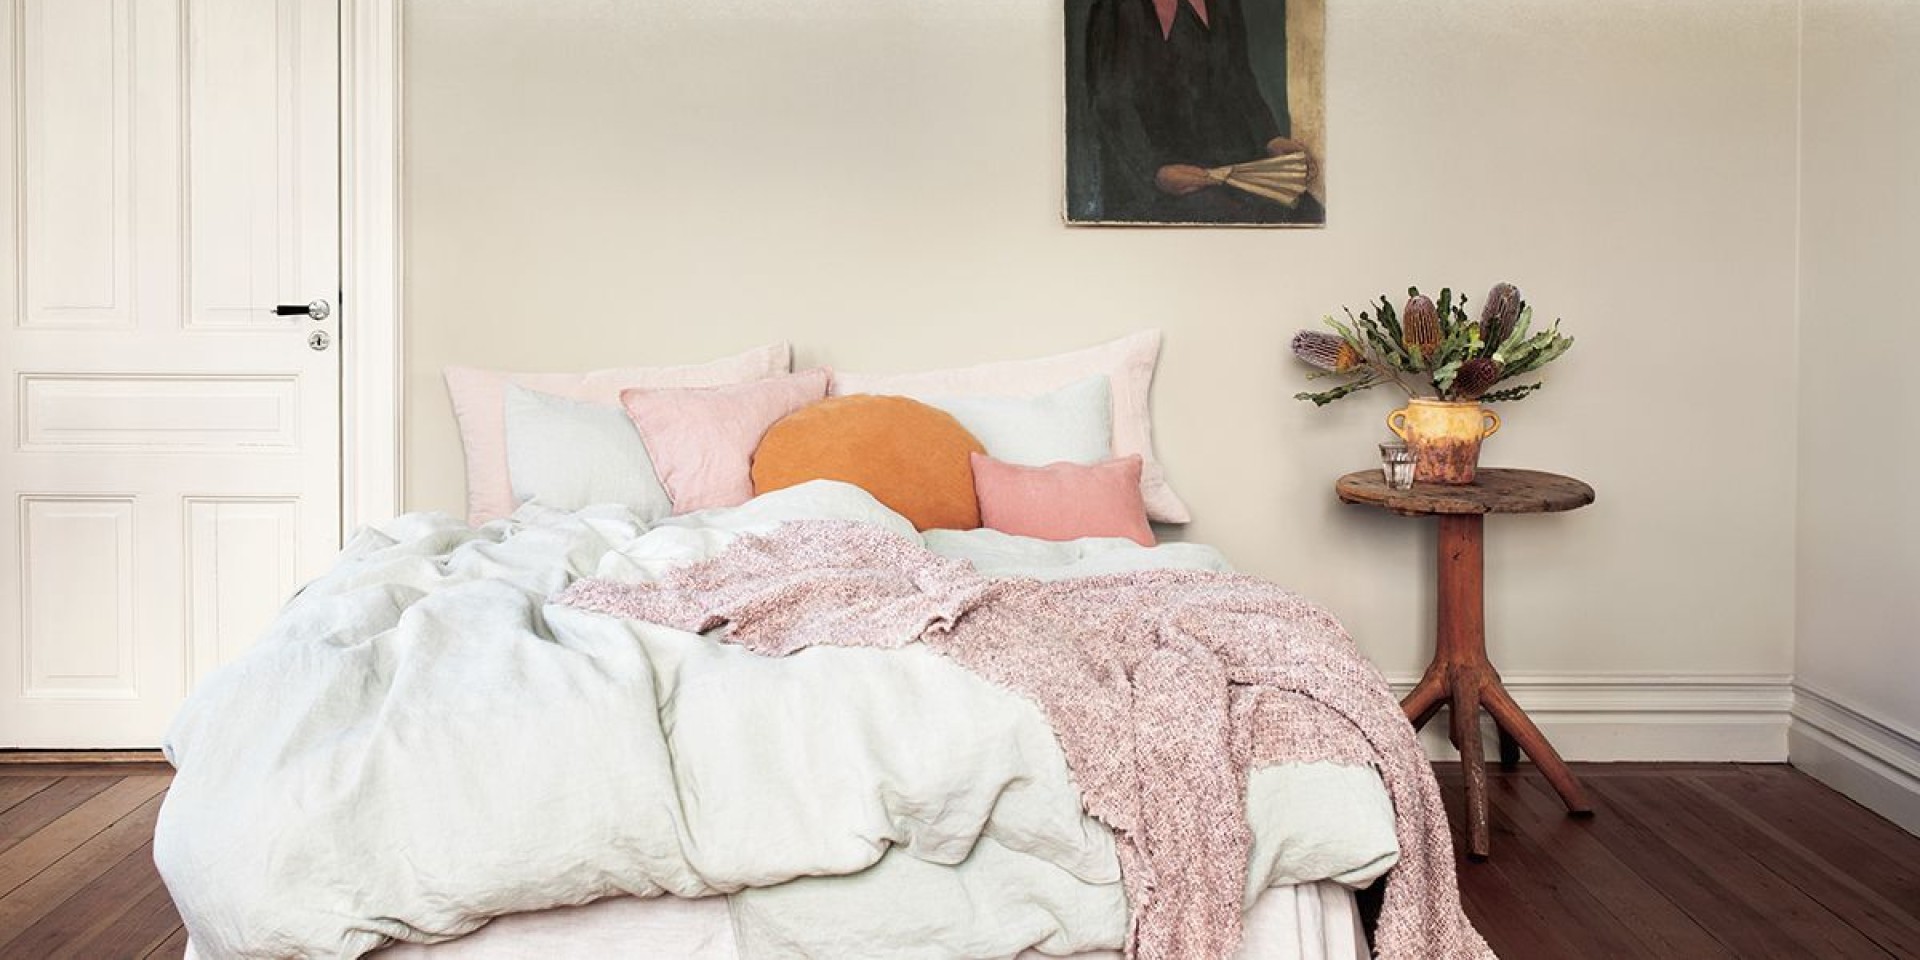 Sovrum målat i kulörerna sinnesro, ljuvlig och morgonrodnad från Alcro ad.balans